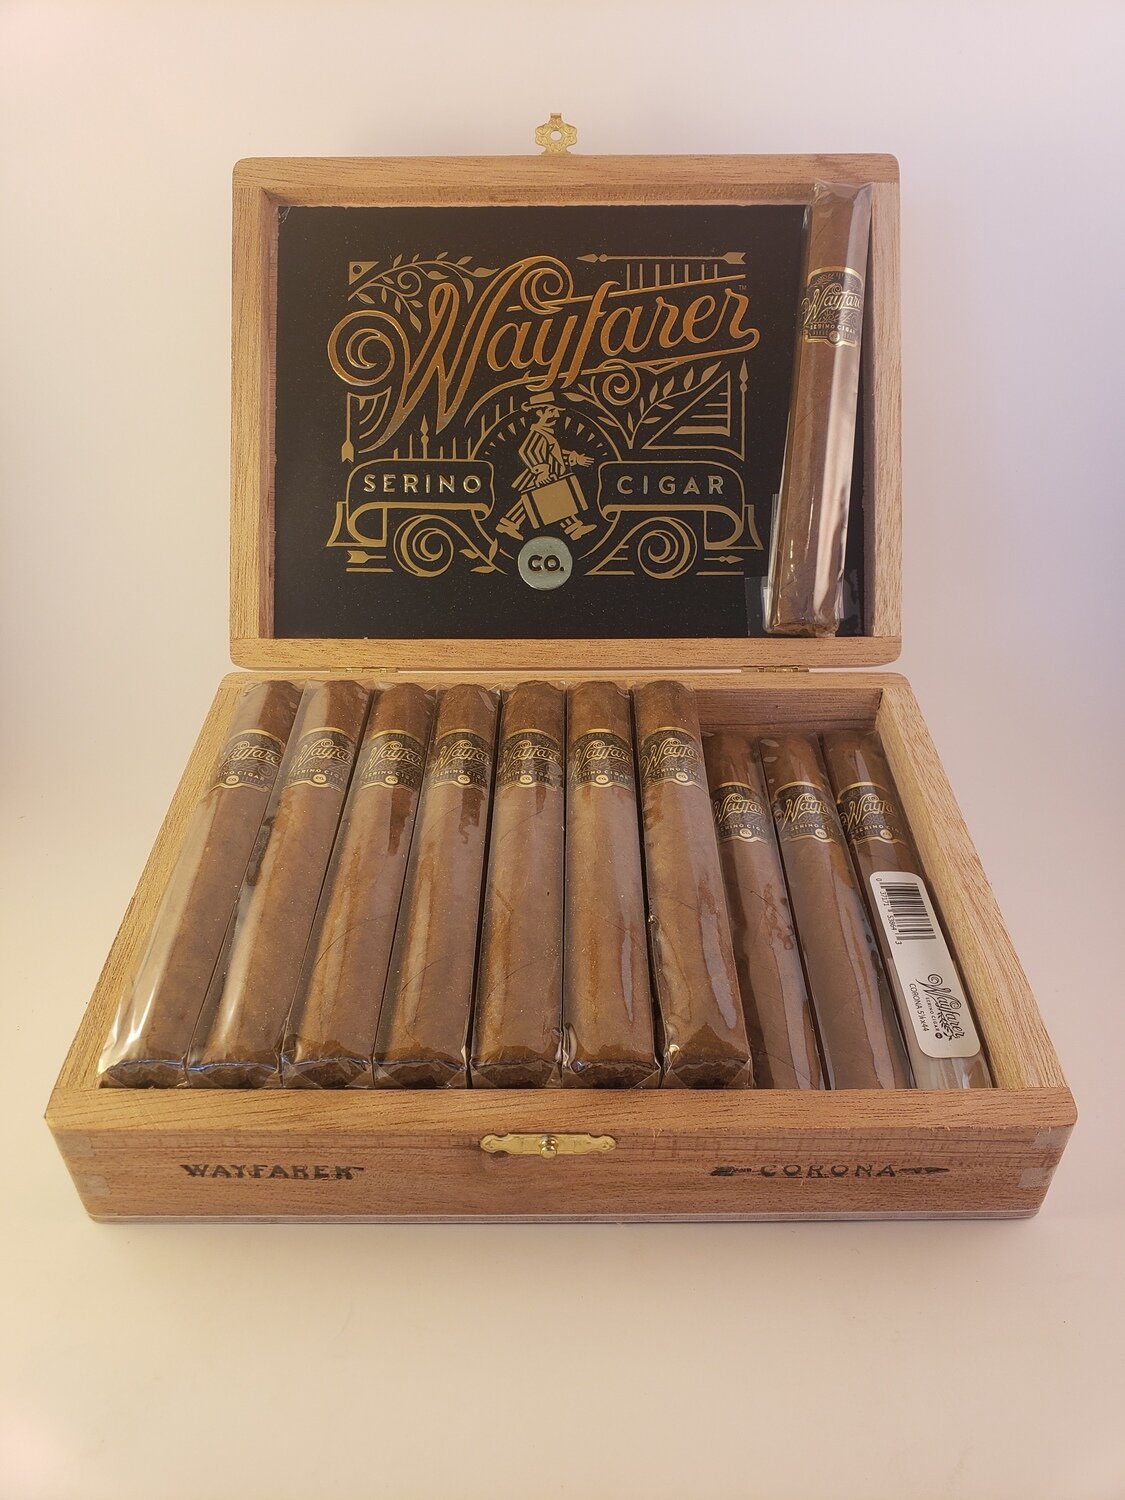 Serino Wayfarer Corona 5 1/8 x 44 Single Cigar